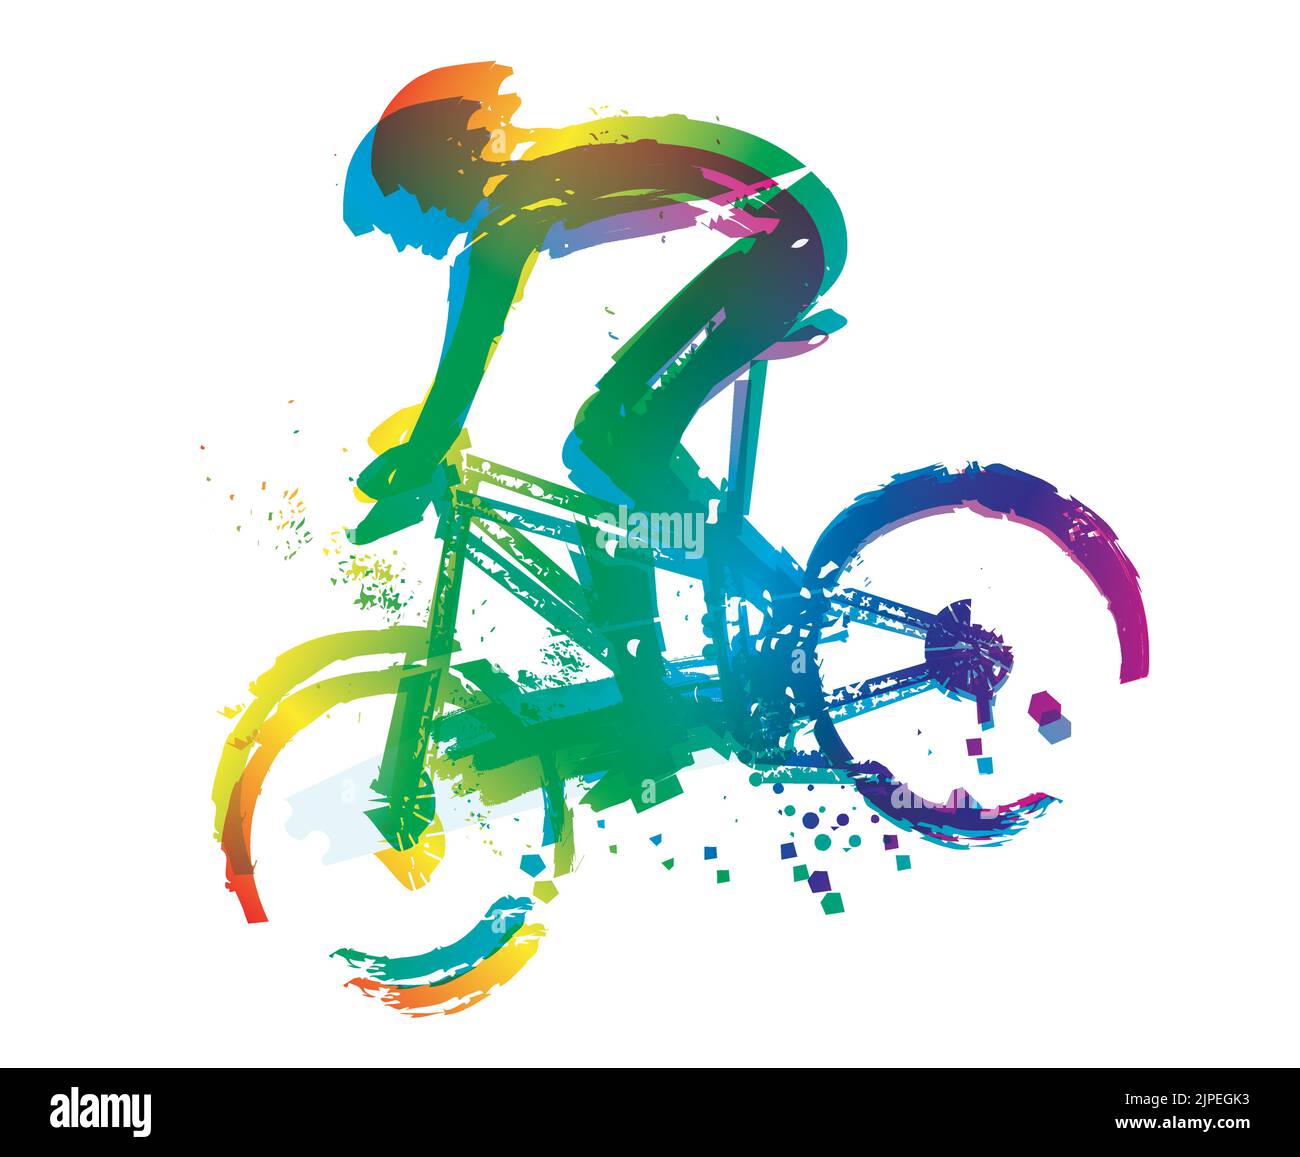 Mountainbiker in voller Geschwindigkeit, Herbst Blattfarbe Hintergrund. Farbenfrohe, ausdrucksstarke Illustration eines Mannes, der mit hoher Geschwindigkeit auf einem Mountainbike einen Hügel hinunterfährt. Stock Vektor